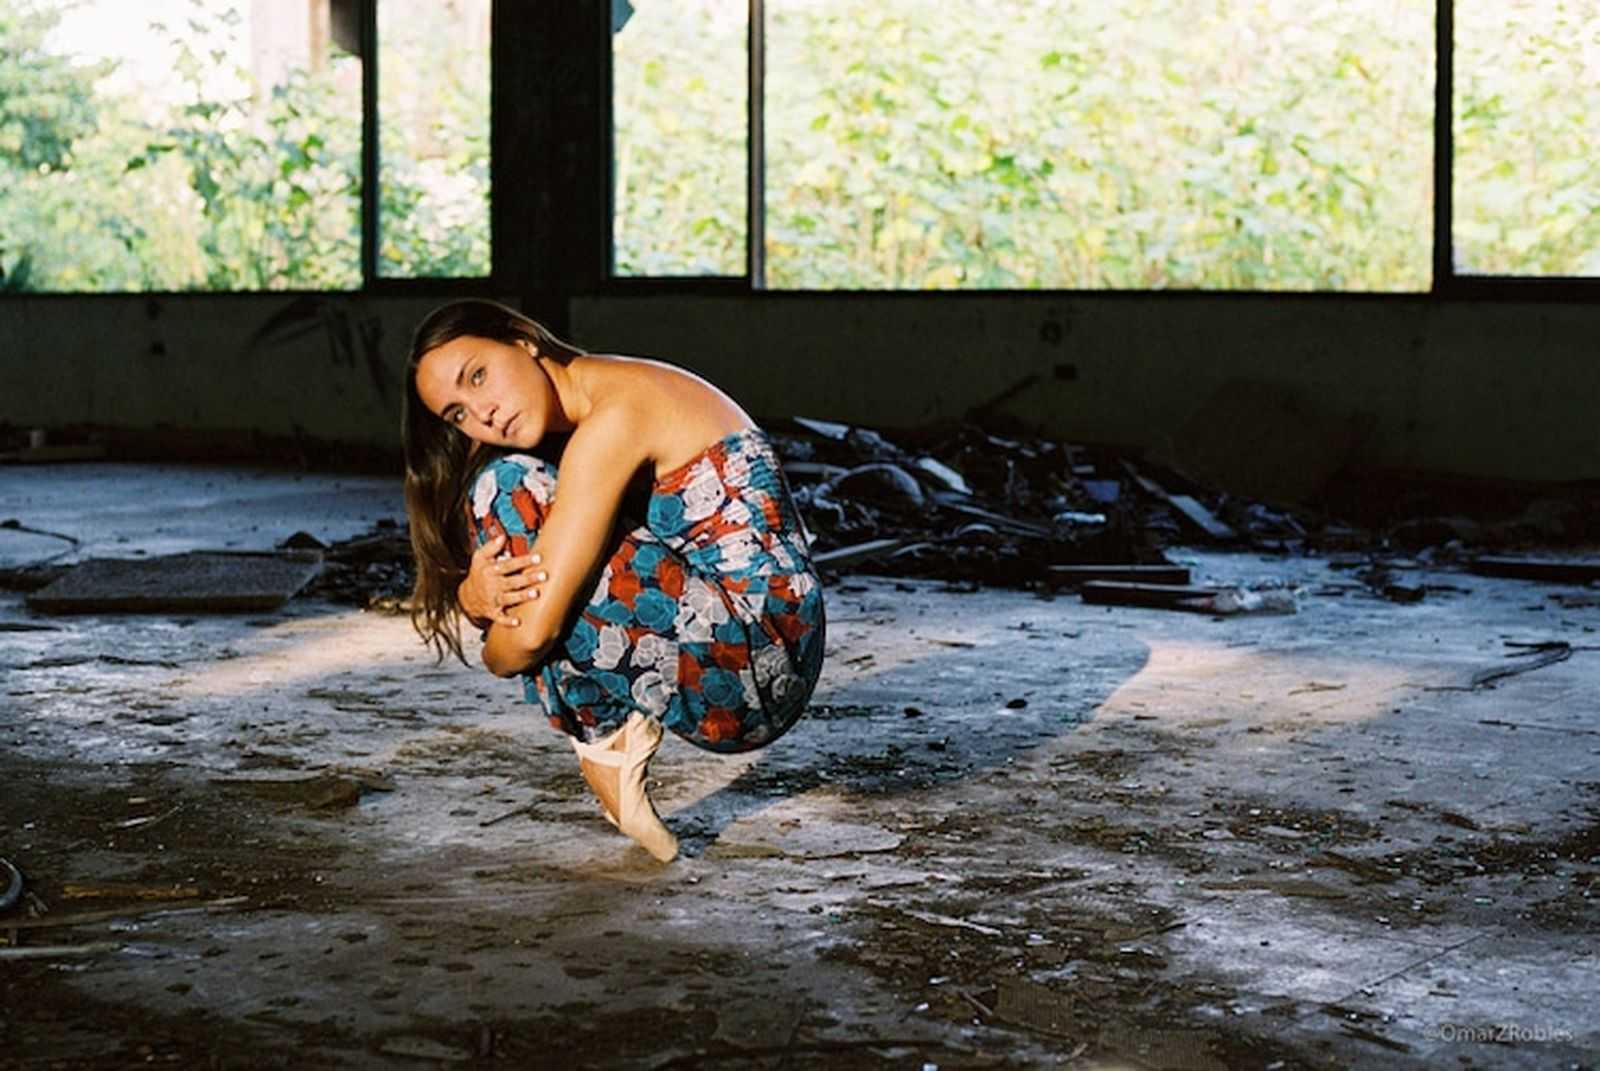 Слушать душераздирающие. Omar Robles фотографии. Танцующая пуэрториканка. Танцы на слезах.